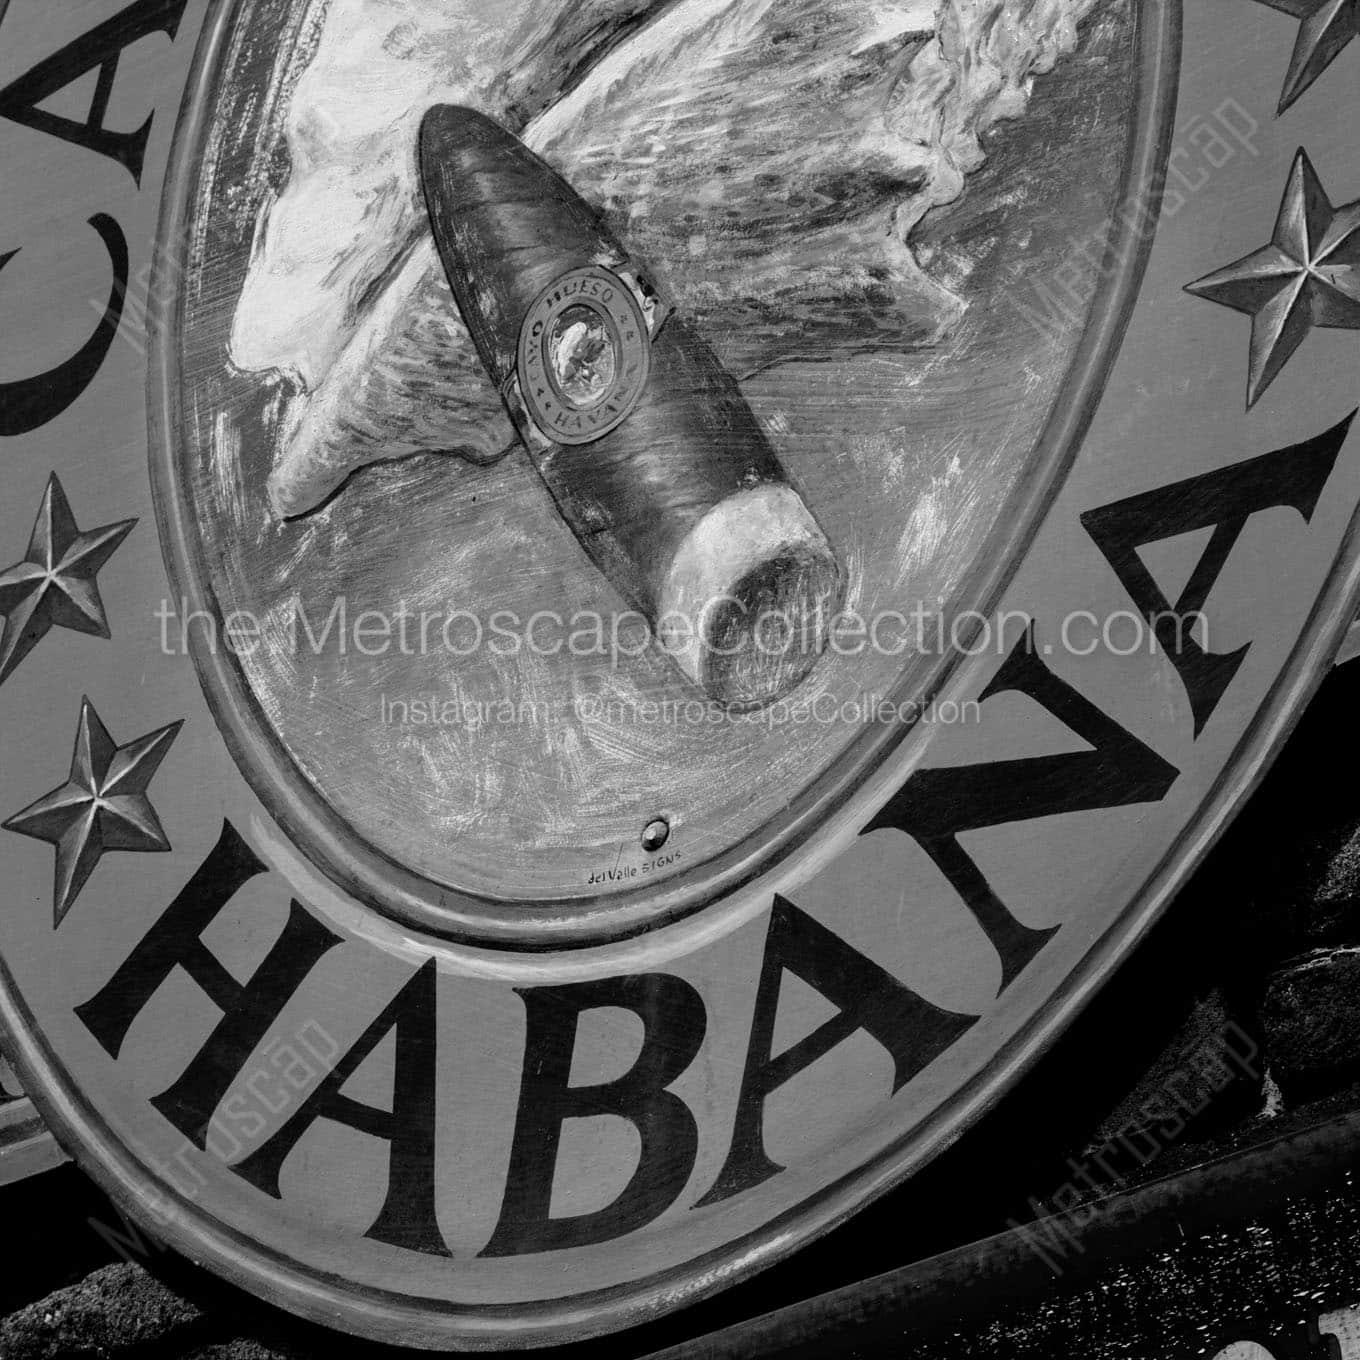 habana cigars mural Black & White Office Art